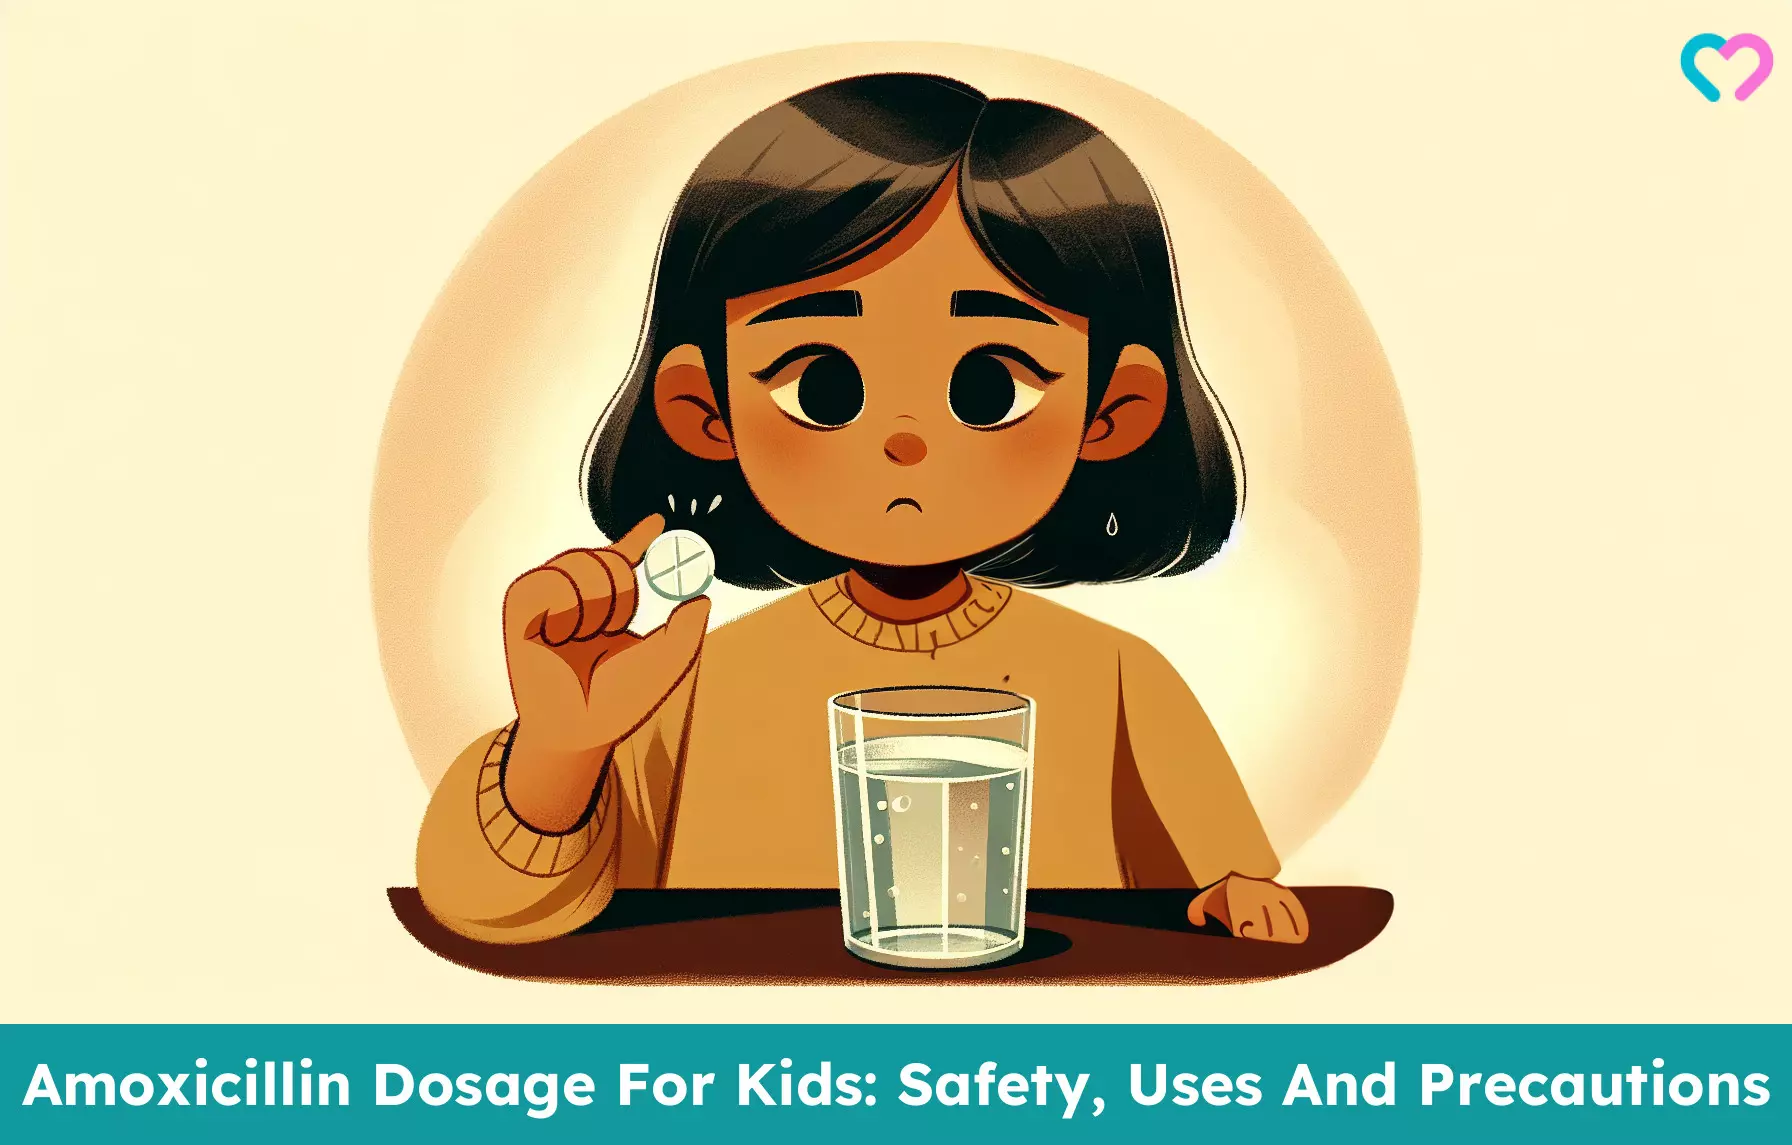 Amoxicillin Dosage For Kids_illustration